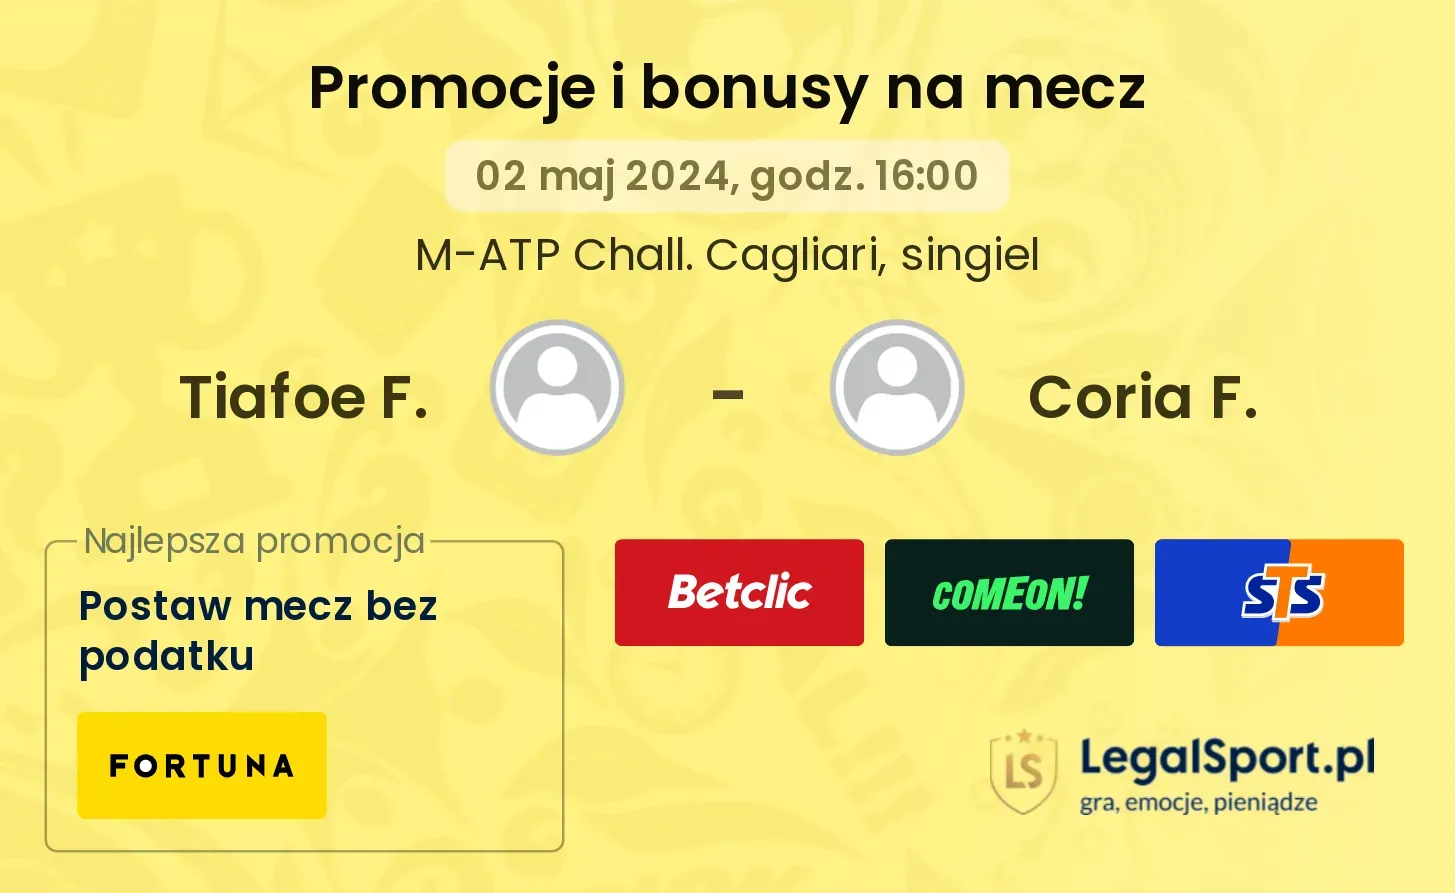 Tiafoe F. - Coria F. promocje bonusy na mecz